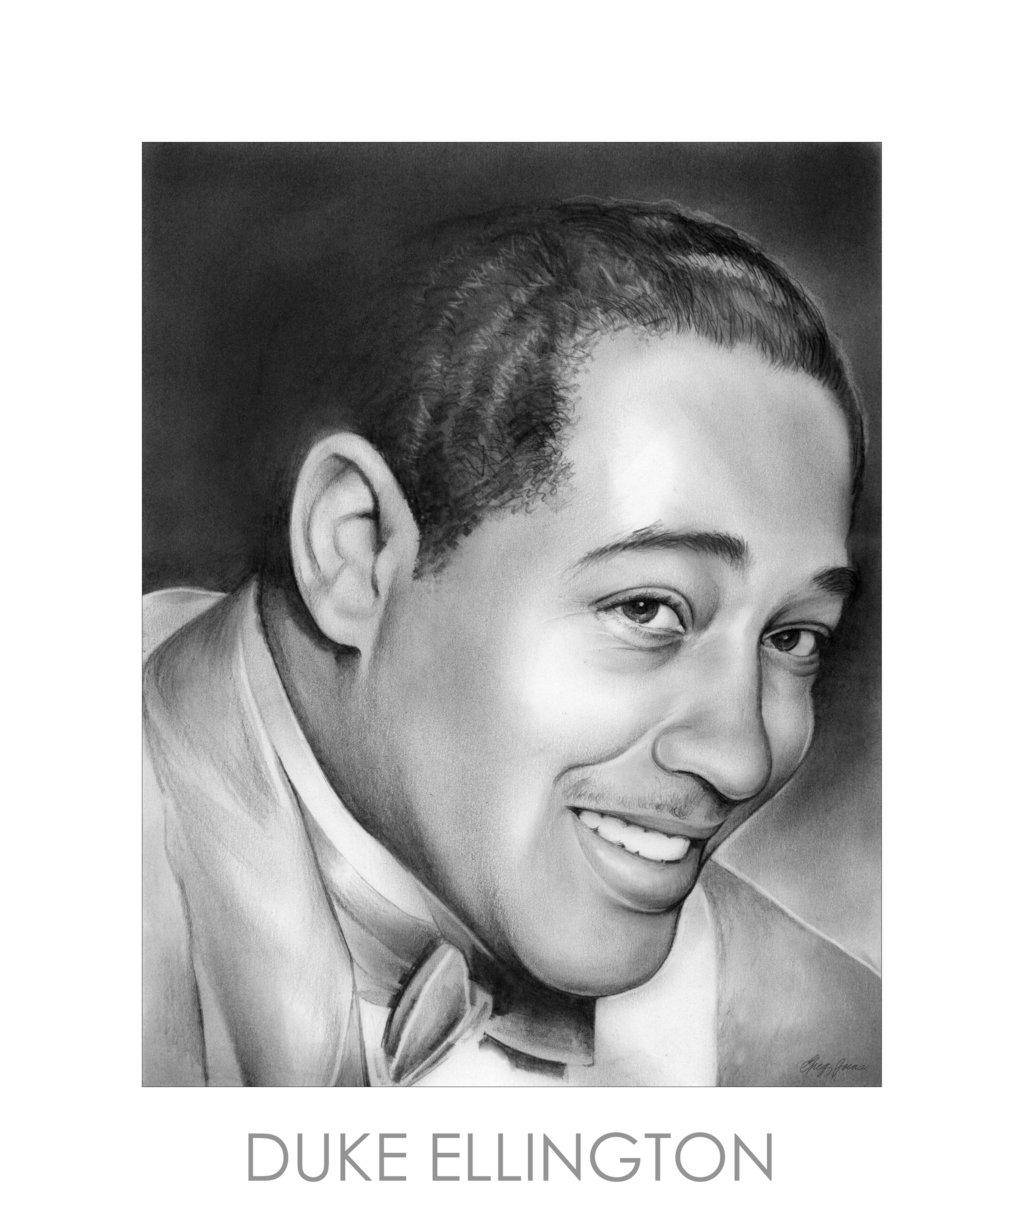 Ilustraciónde Retrato Del Músico Estadounidense Duke Ellington Para Fondo De Pantalla De Computadora O Móvil. Fondo de pantalla